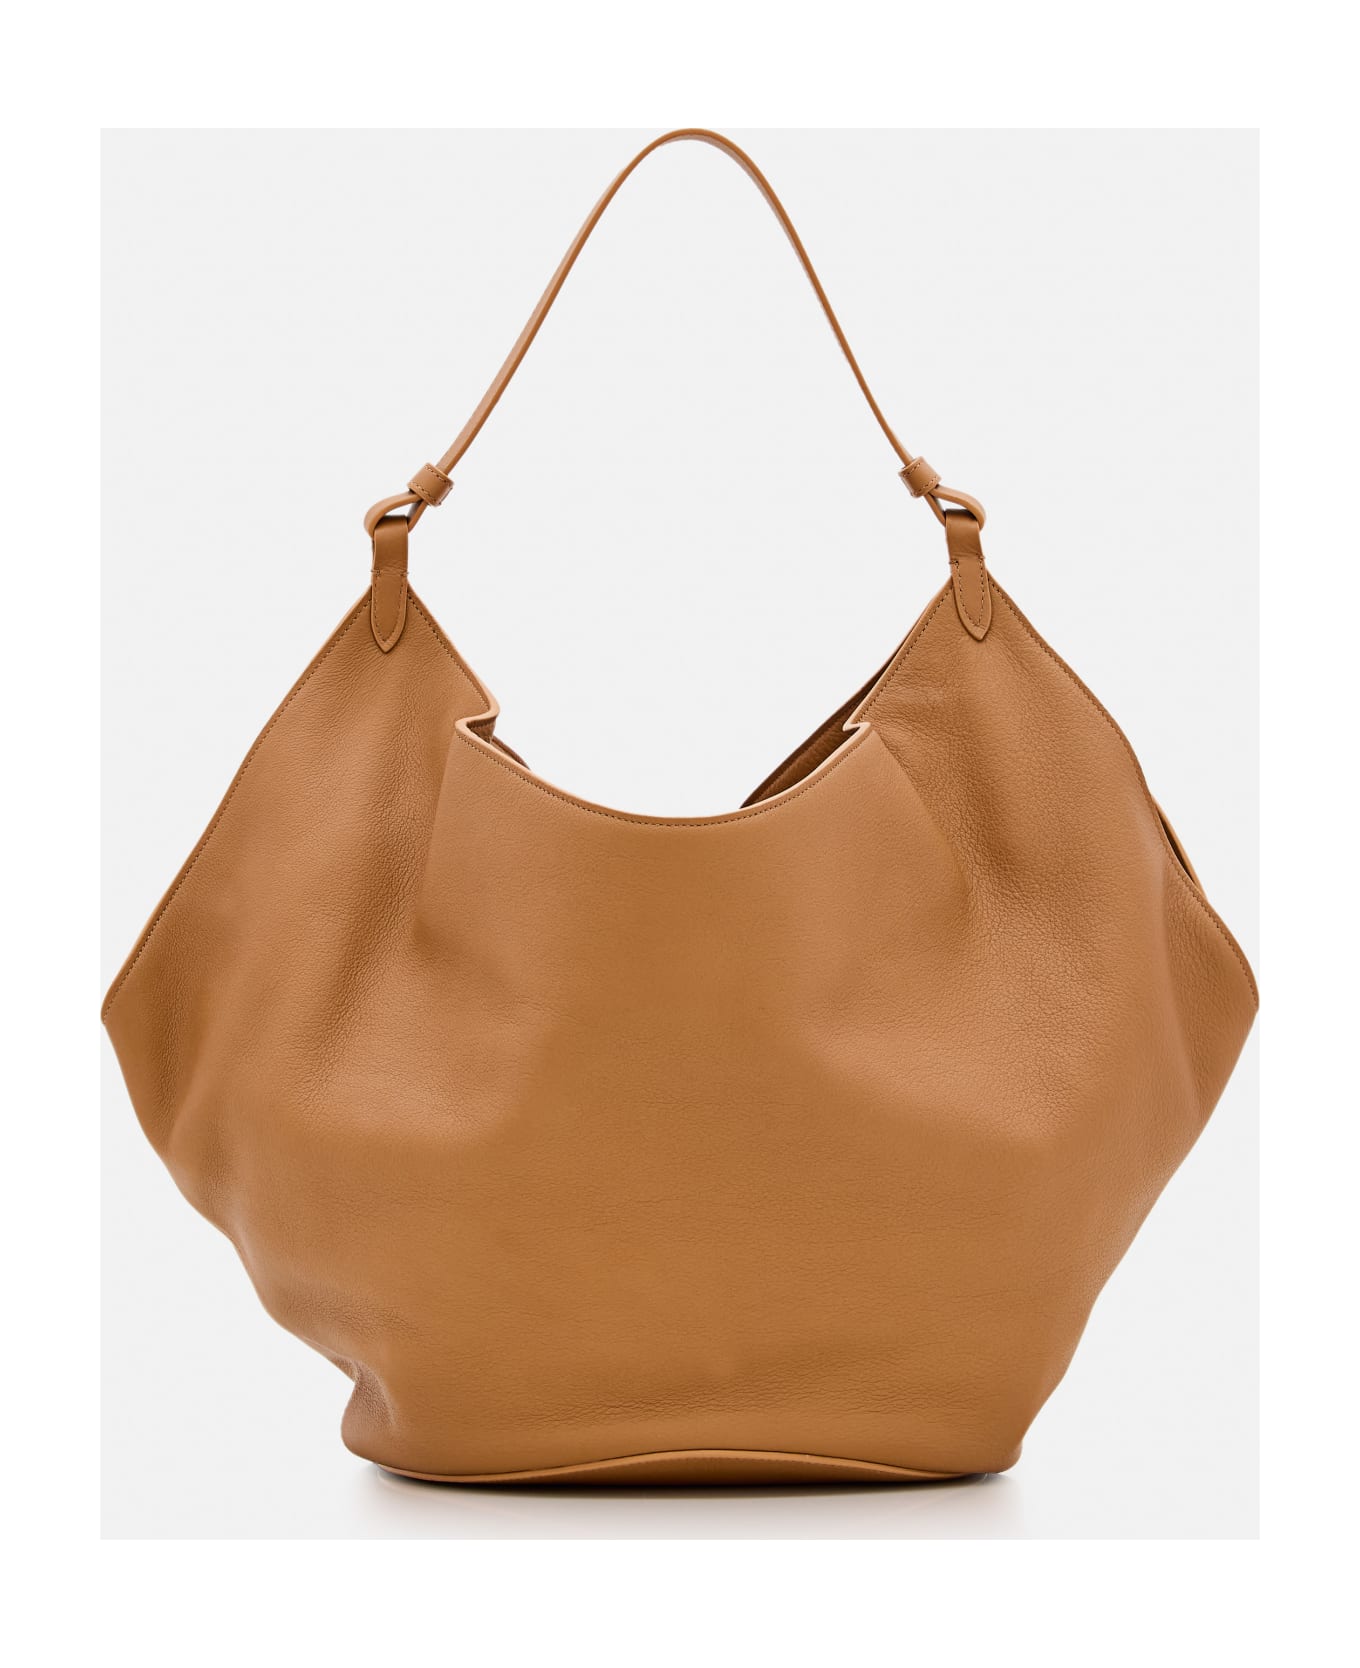 Khaite Medium Lotus Leather Bag - Beige